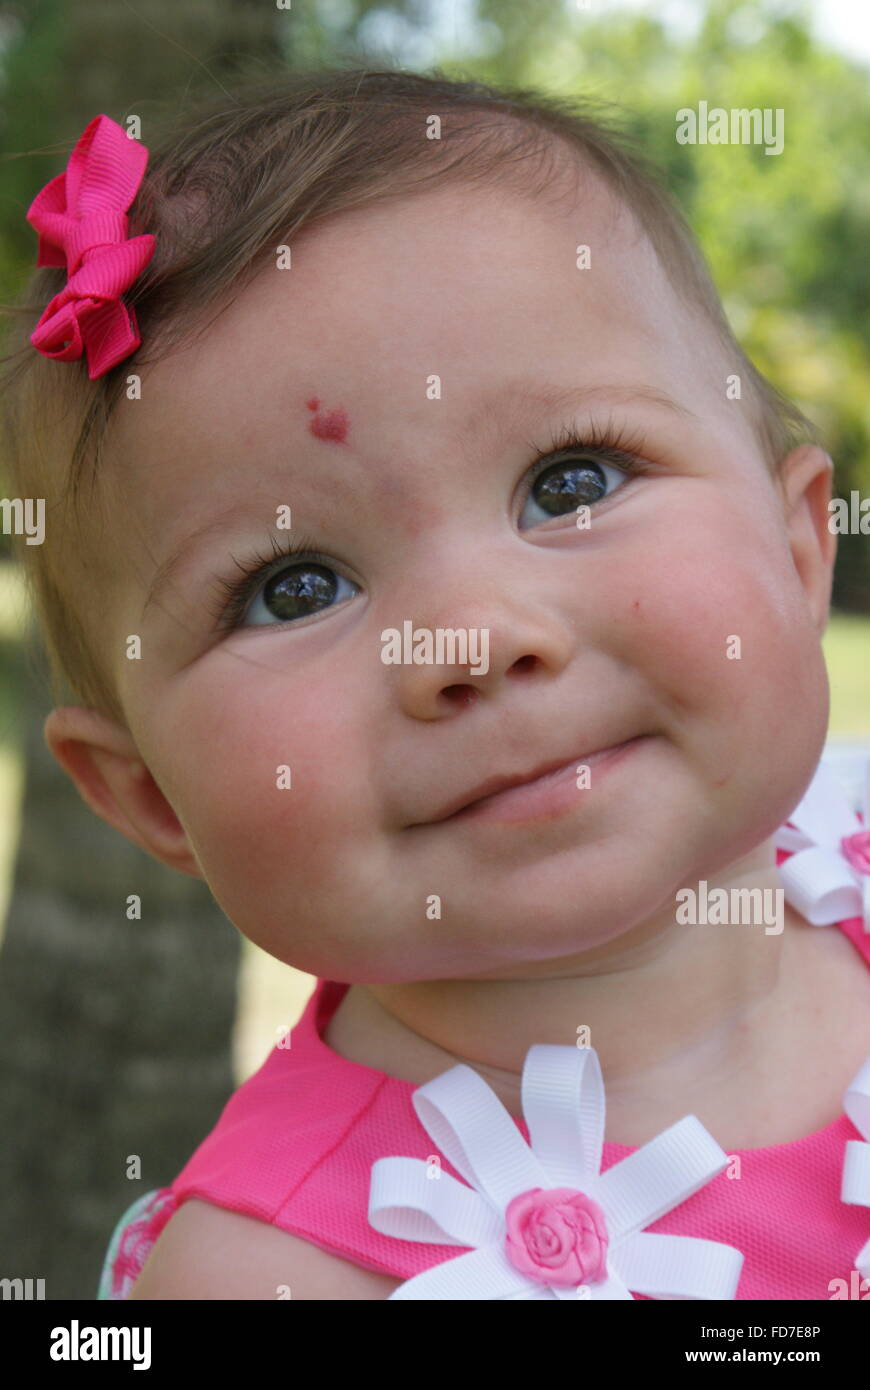 Schönes kleines Baby Mädchen alle verkleidet für Ostersonntag. Sie hat eine schöne herzförmige Muttermal auf der Stirn. Stockfoto